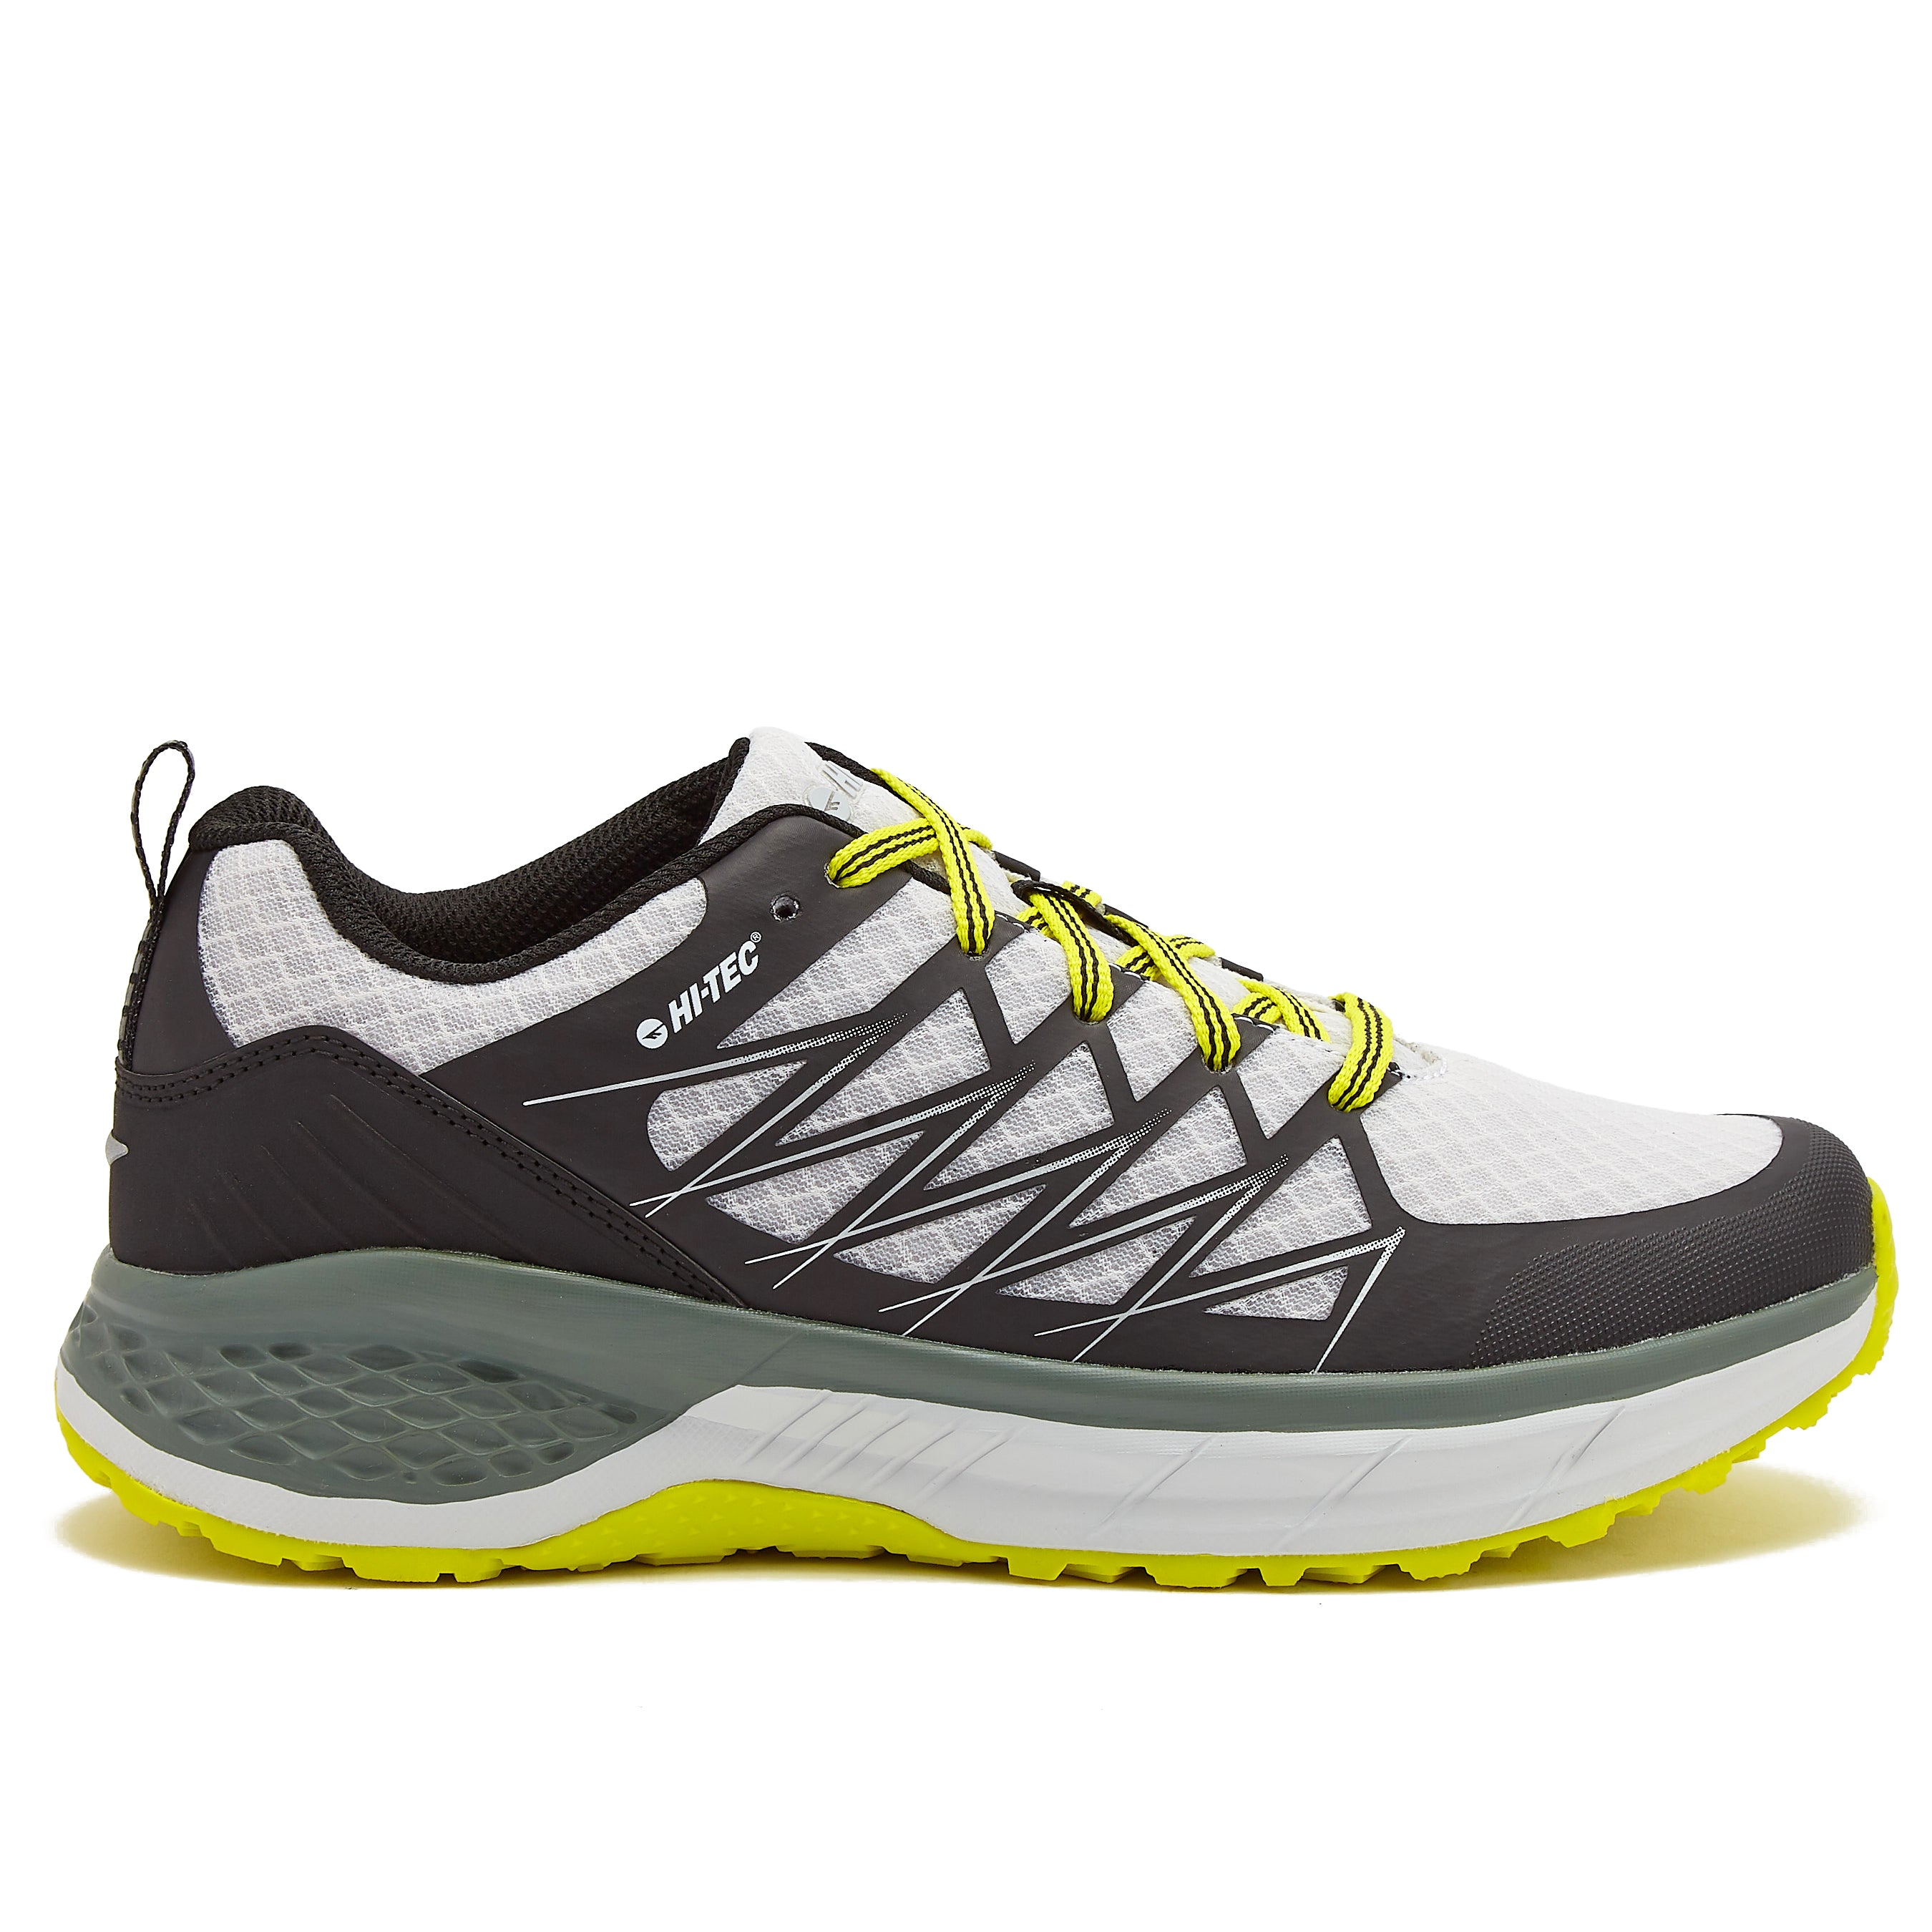 Men's Outdoor Hiking Boots | Waterproof Trail Shoes for Men – Hi-Tec.com